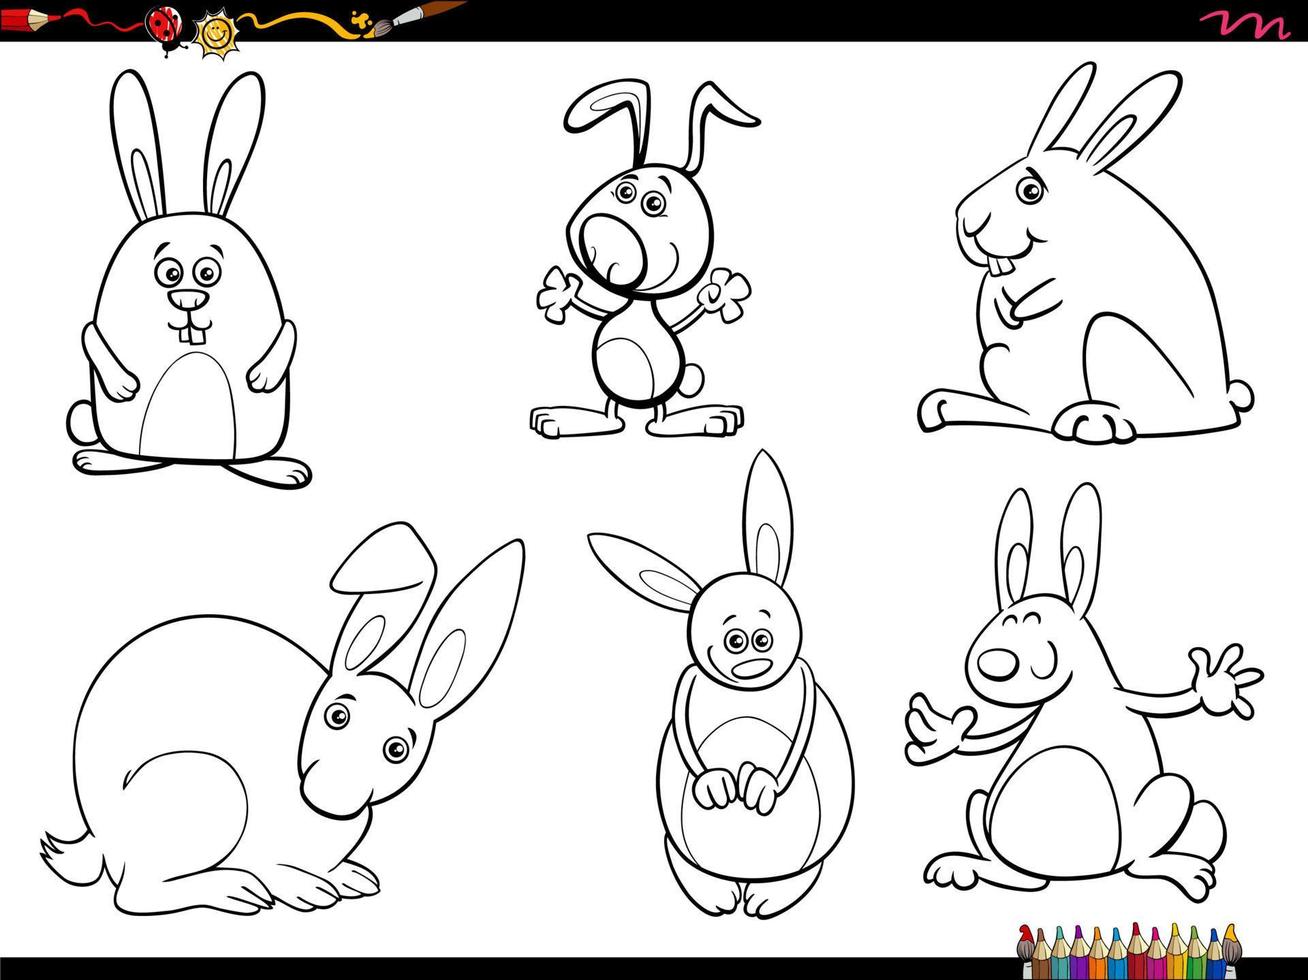 cartoon rabbits animal characters set coloring page vector